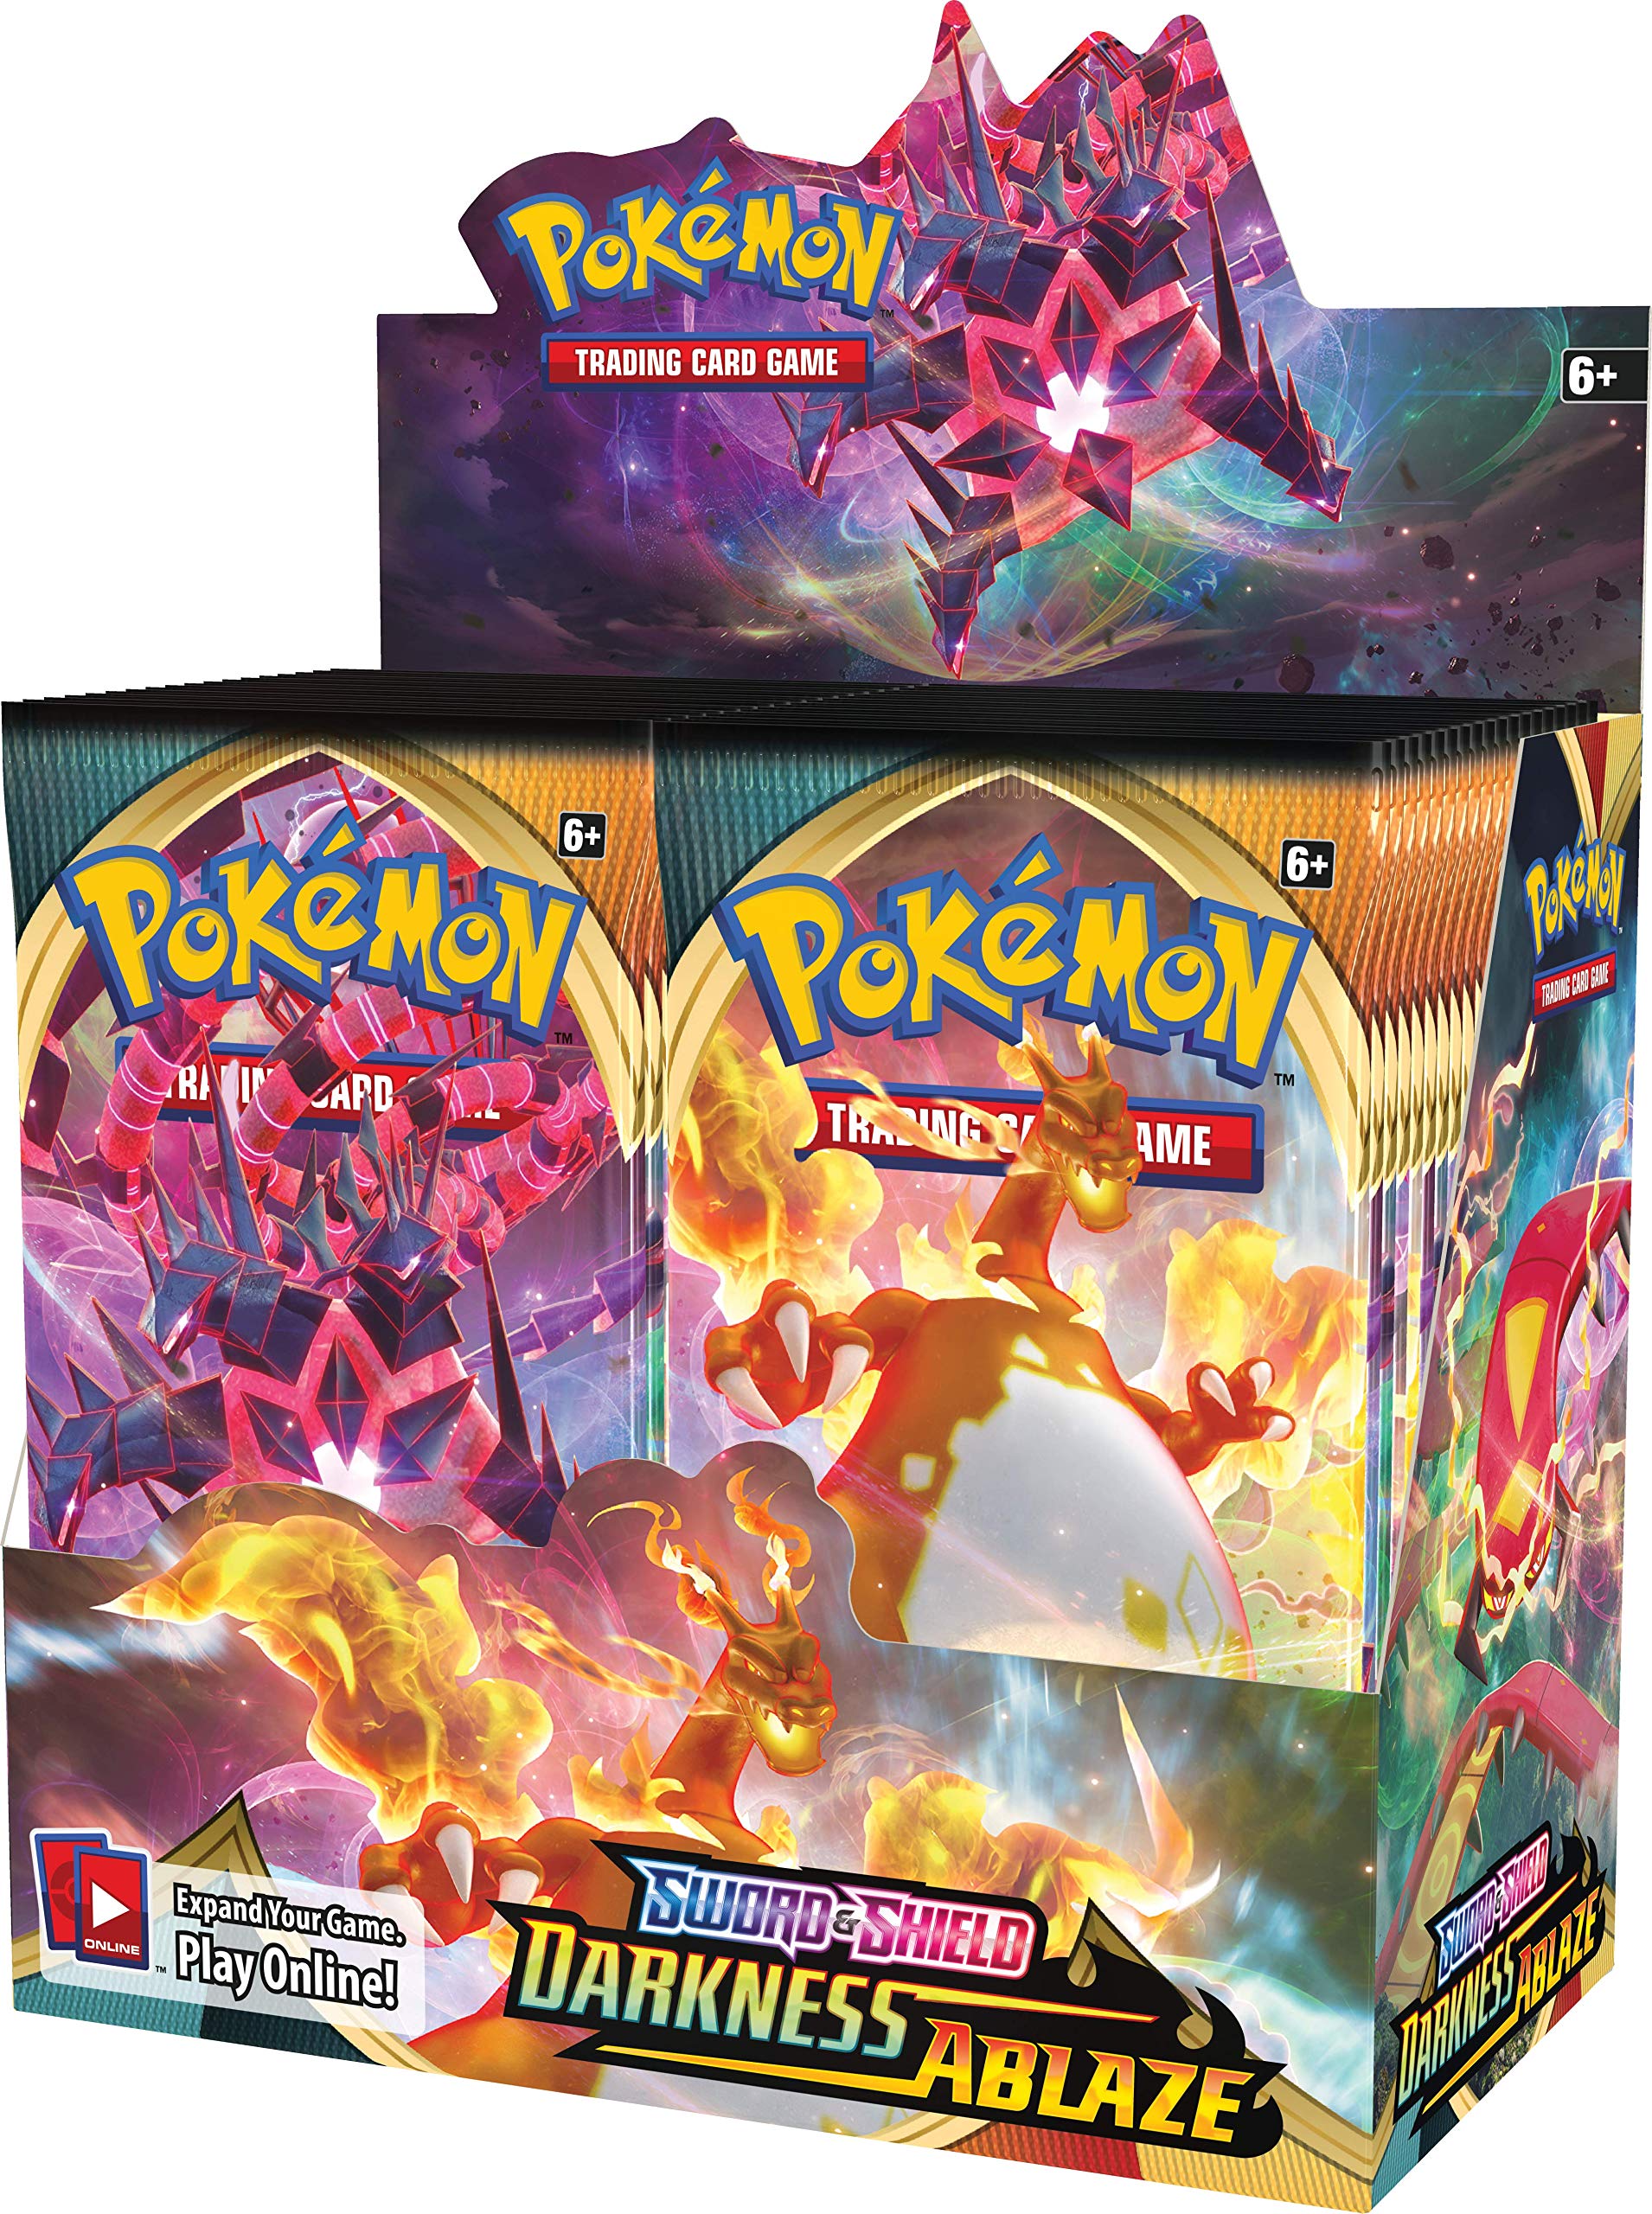 Pokémon TCG: Sword & Shield Darkness Ablaze Booster Box, 36 Packs (174-81712)